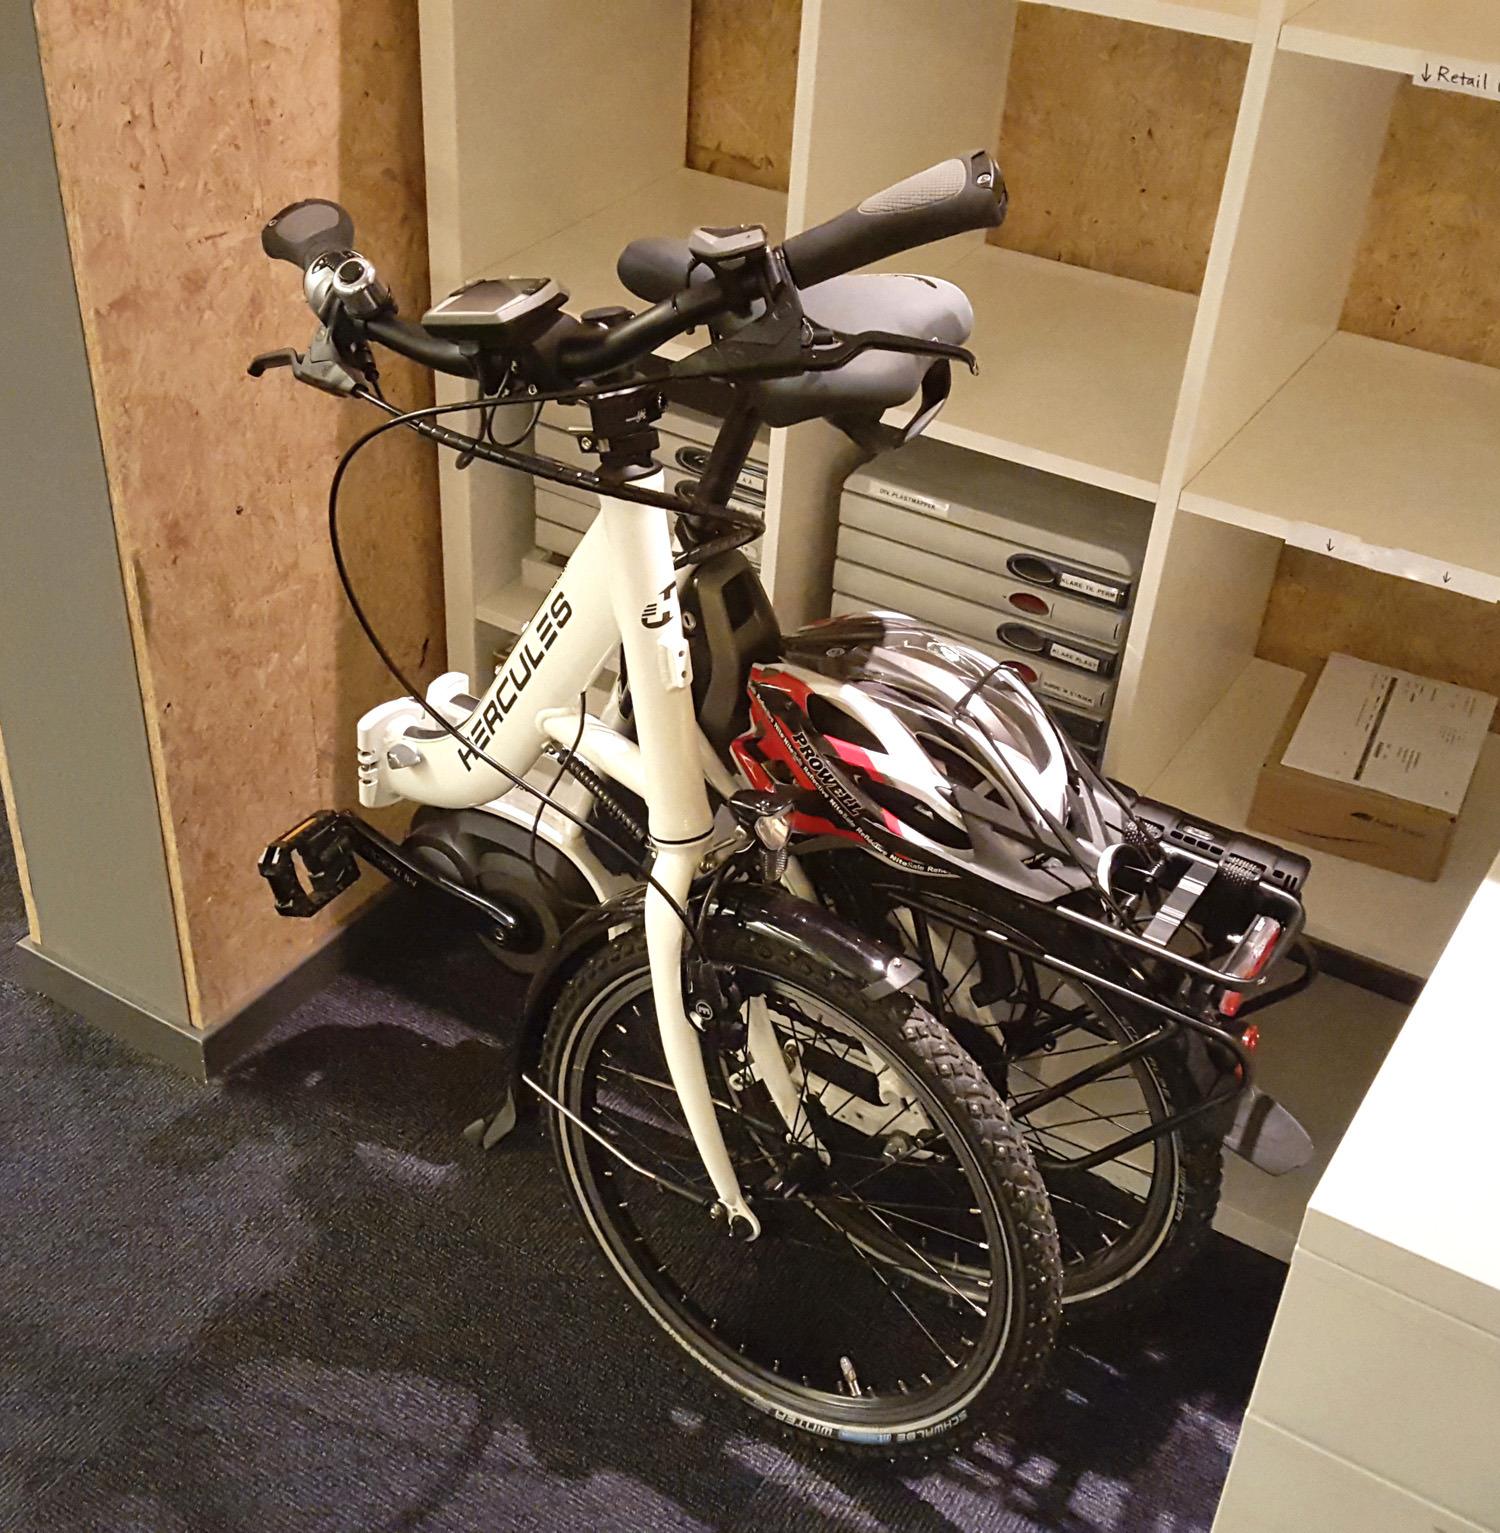 Den sammenleggbare sykkelen er lett å få med seg inn, og tar ikke mye plass på kontoret. Foto: Alexander Tøgard, Tek.no